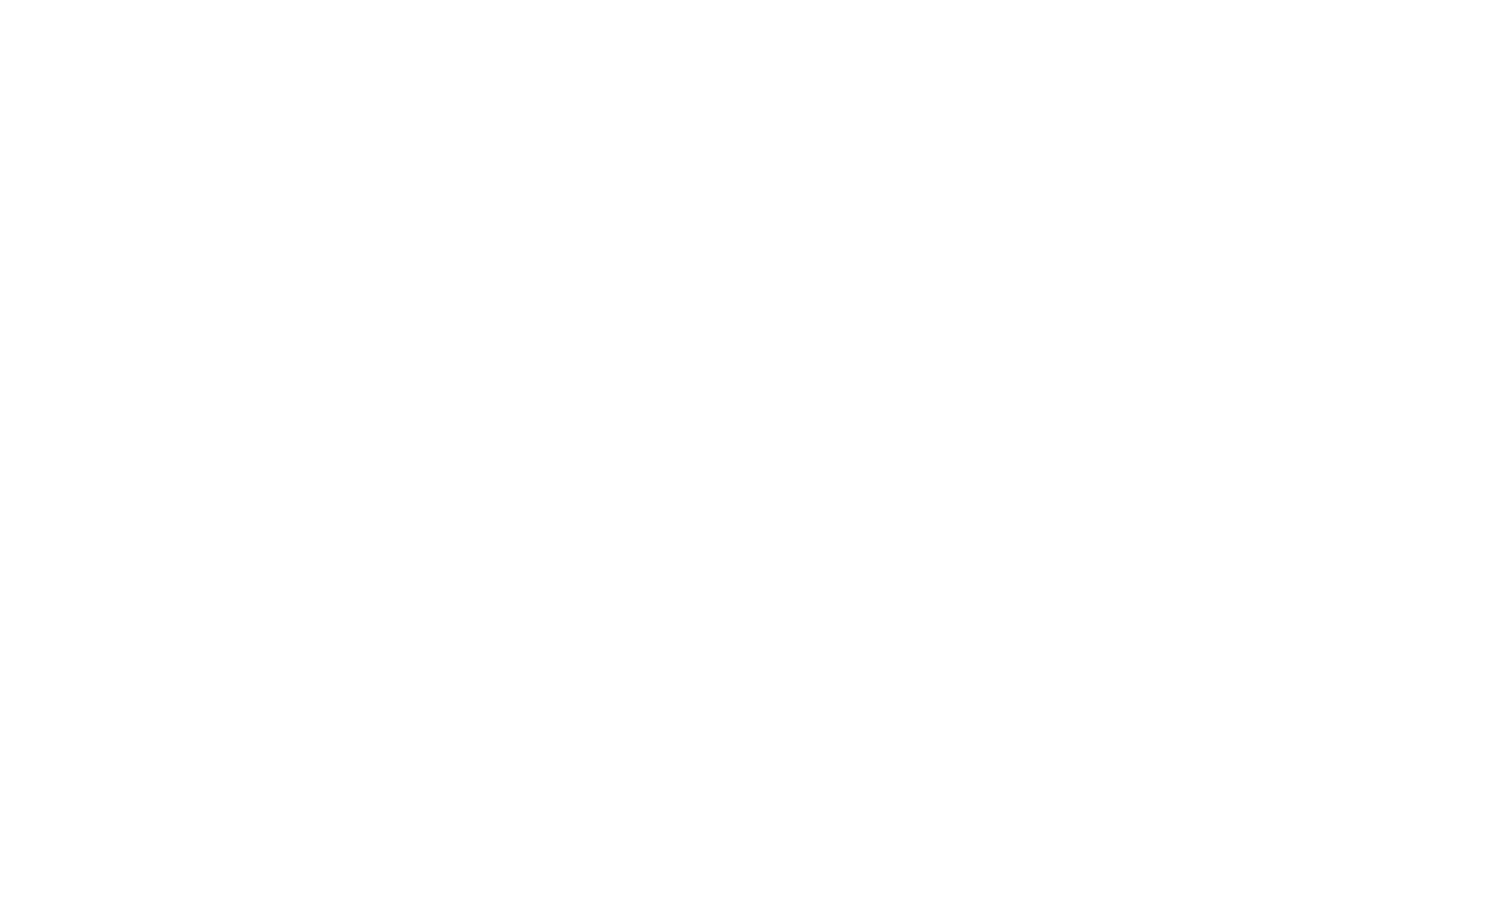 D. Rigo Media